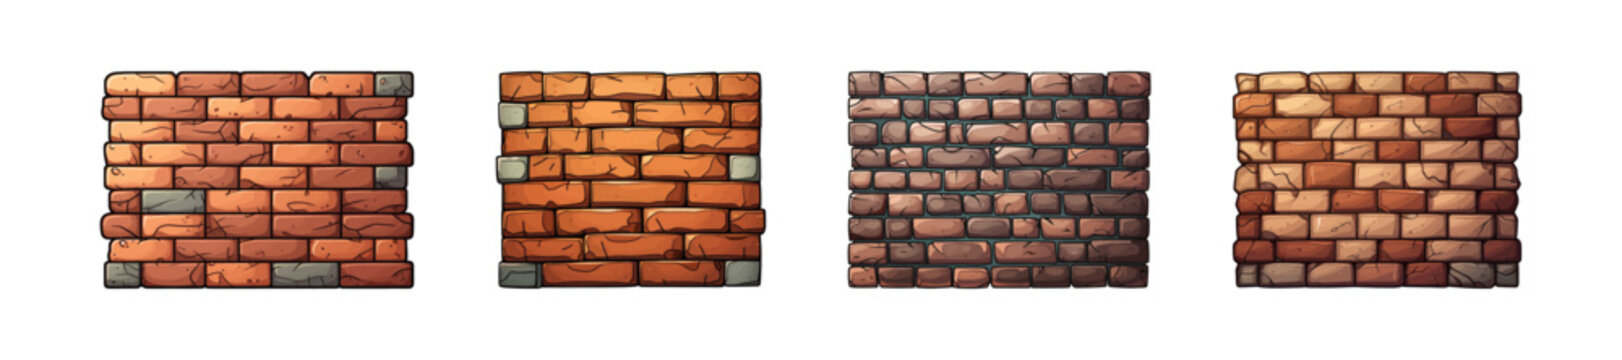 Cartoon brick wall. Vector illustration